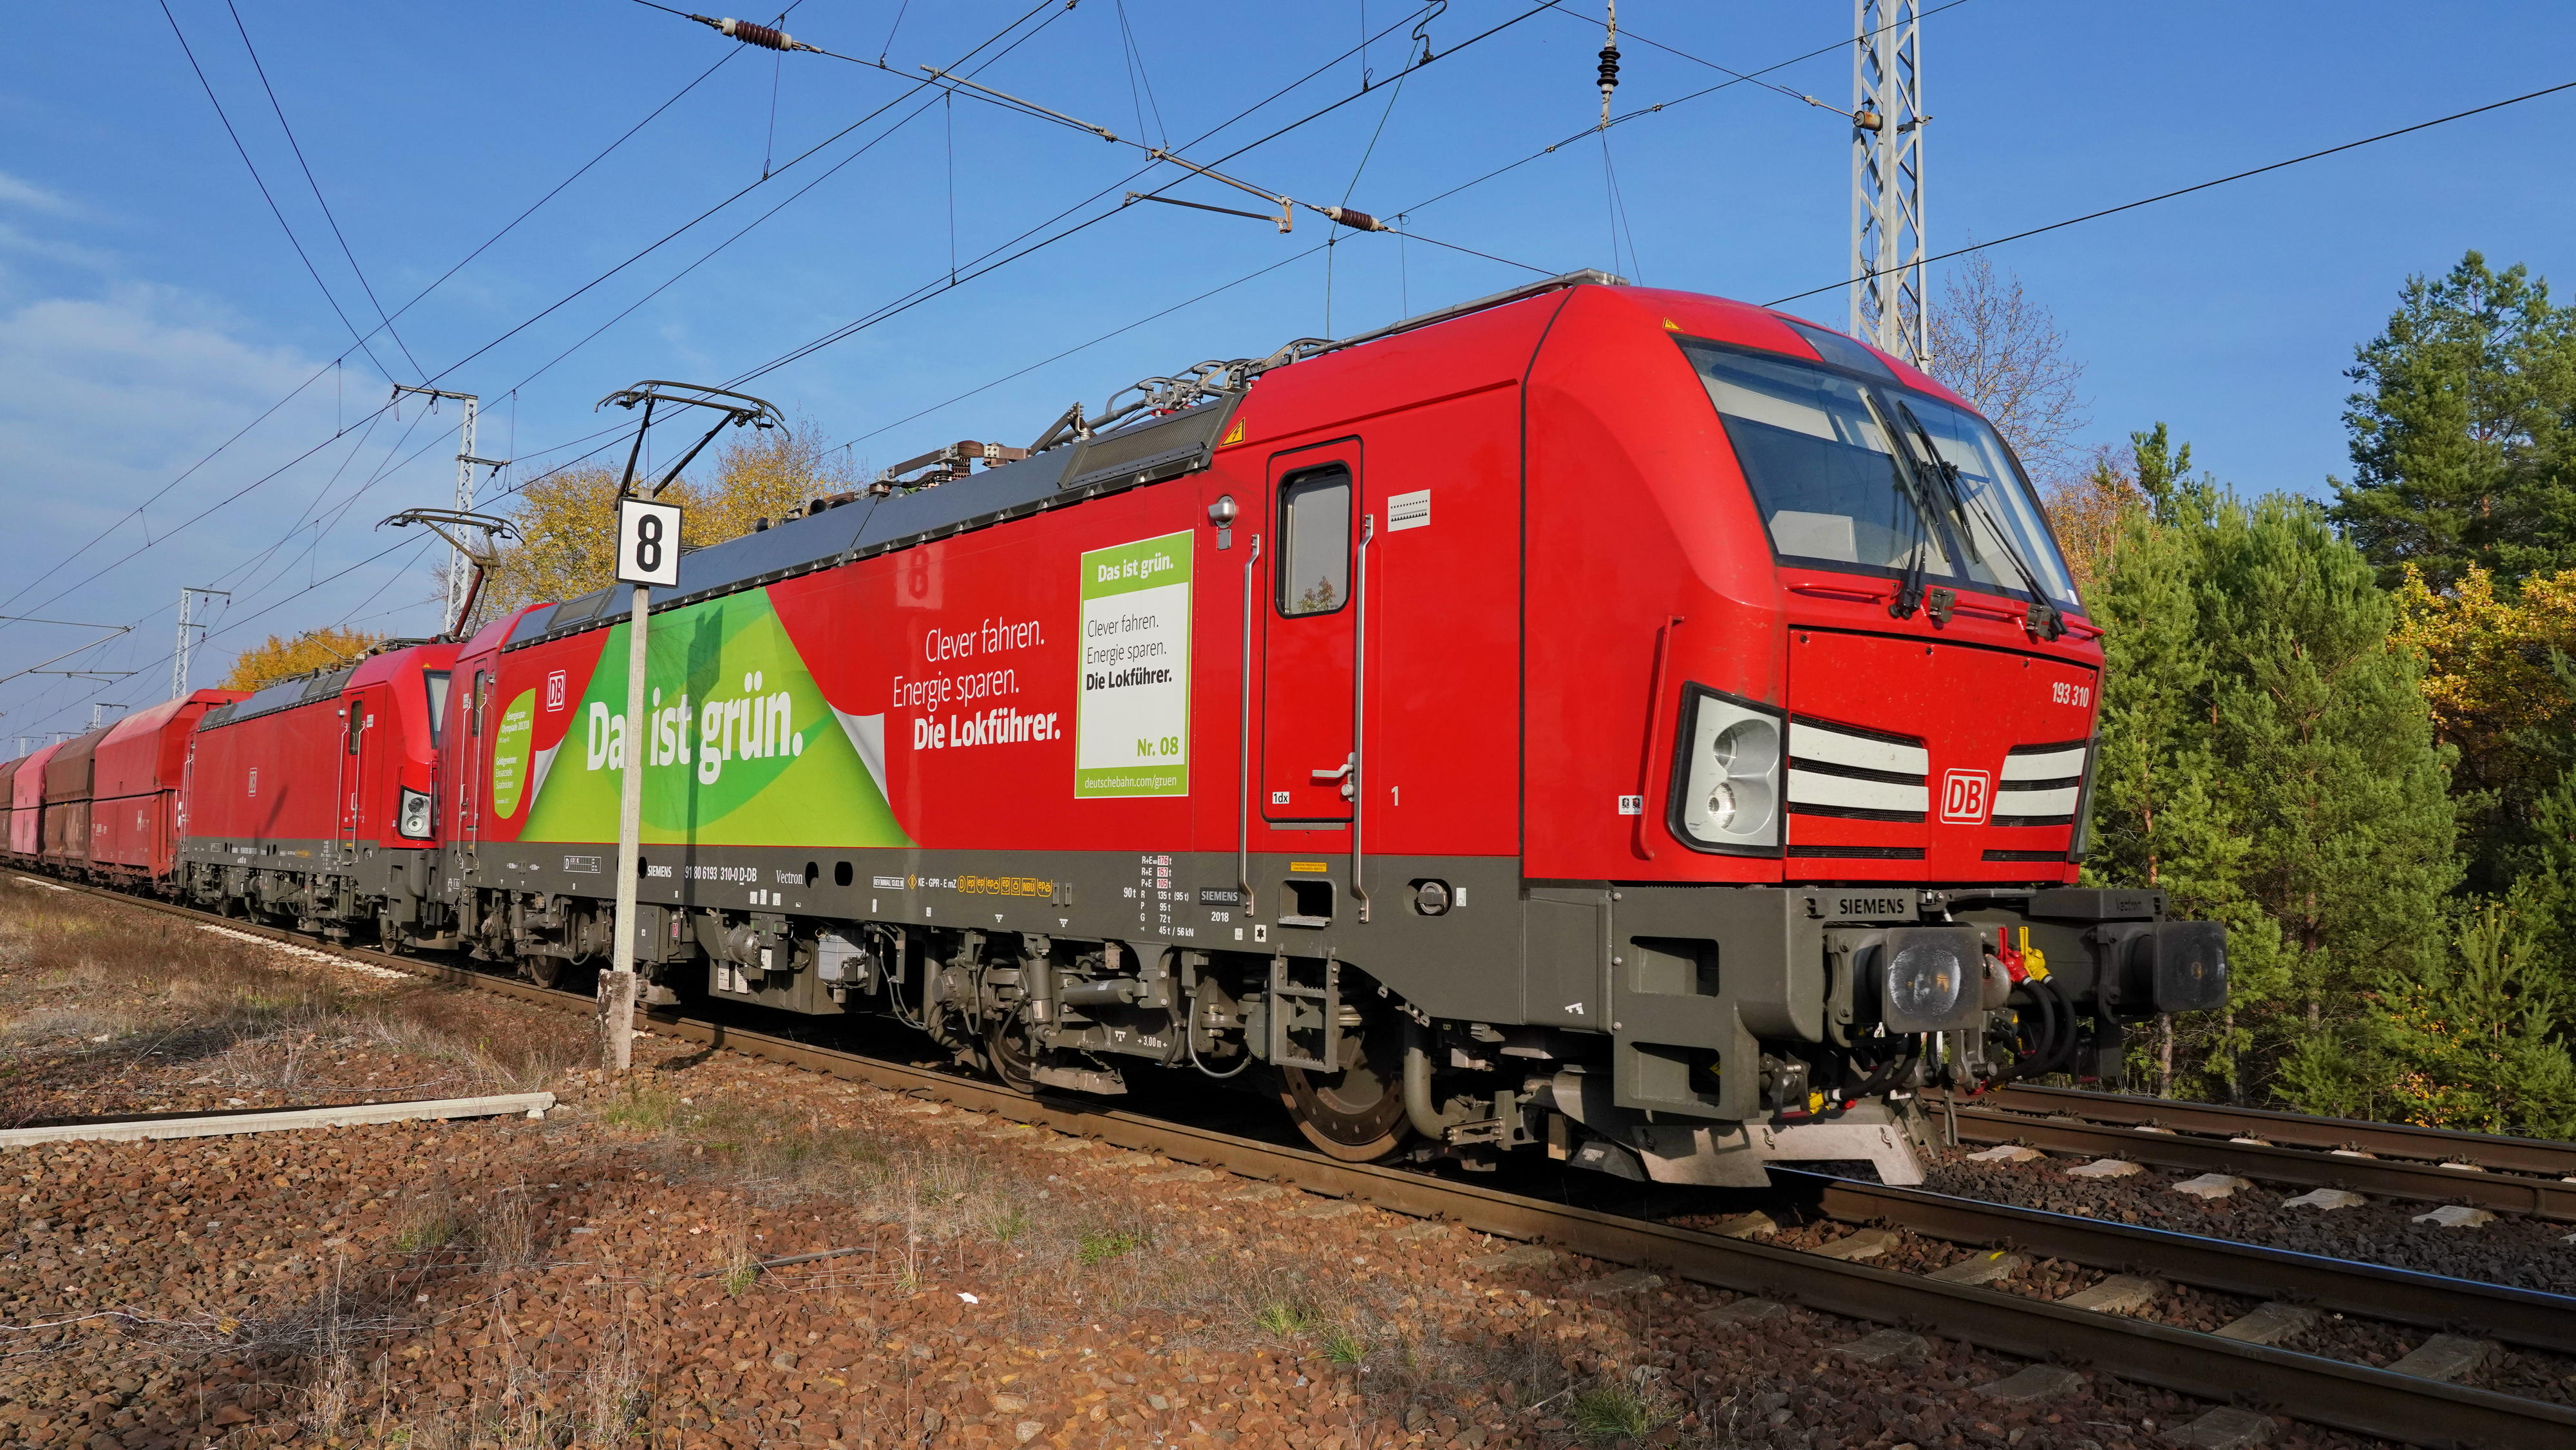 Unsere Vectron für Europa I am European Deutsche Bahn AG